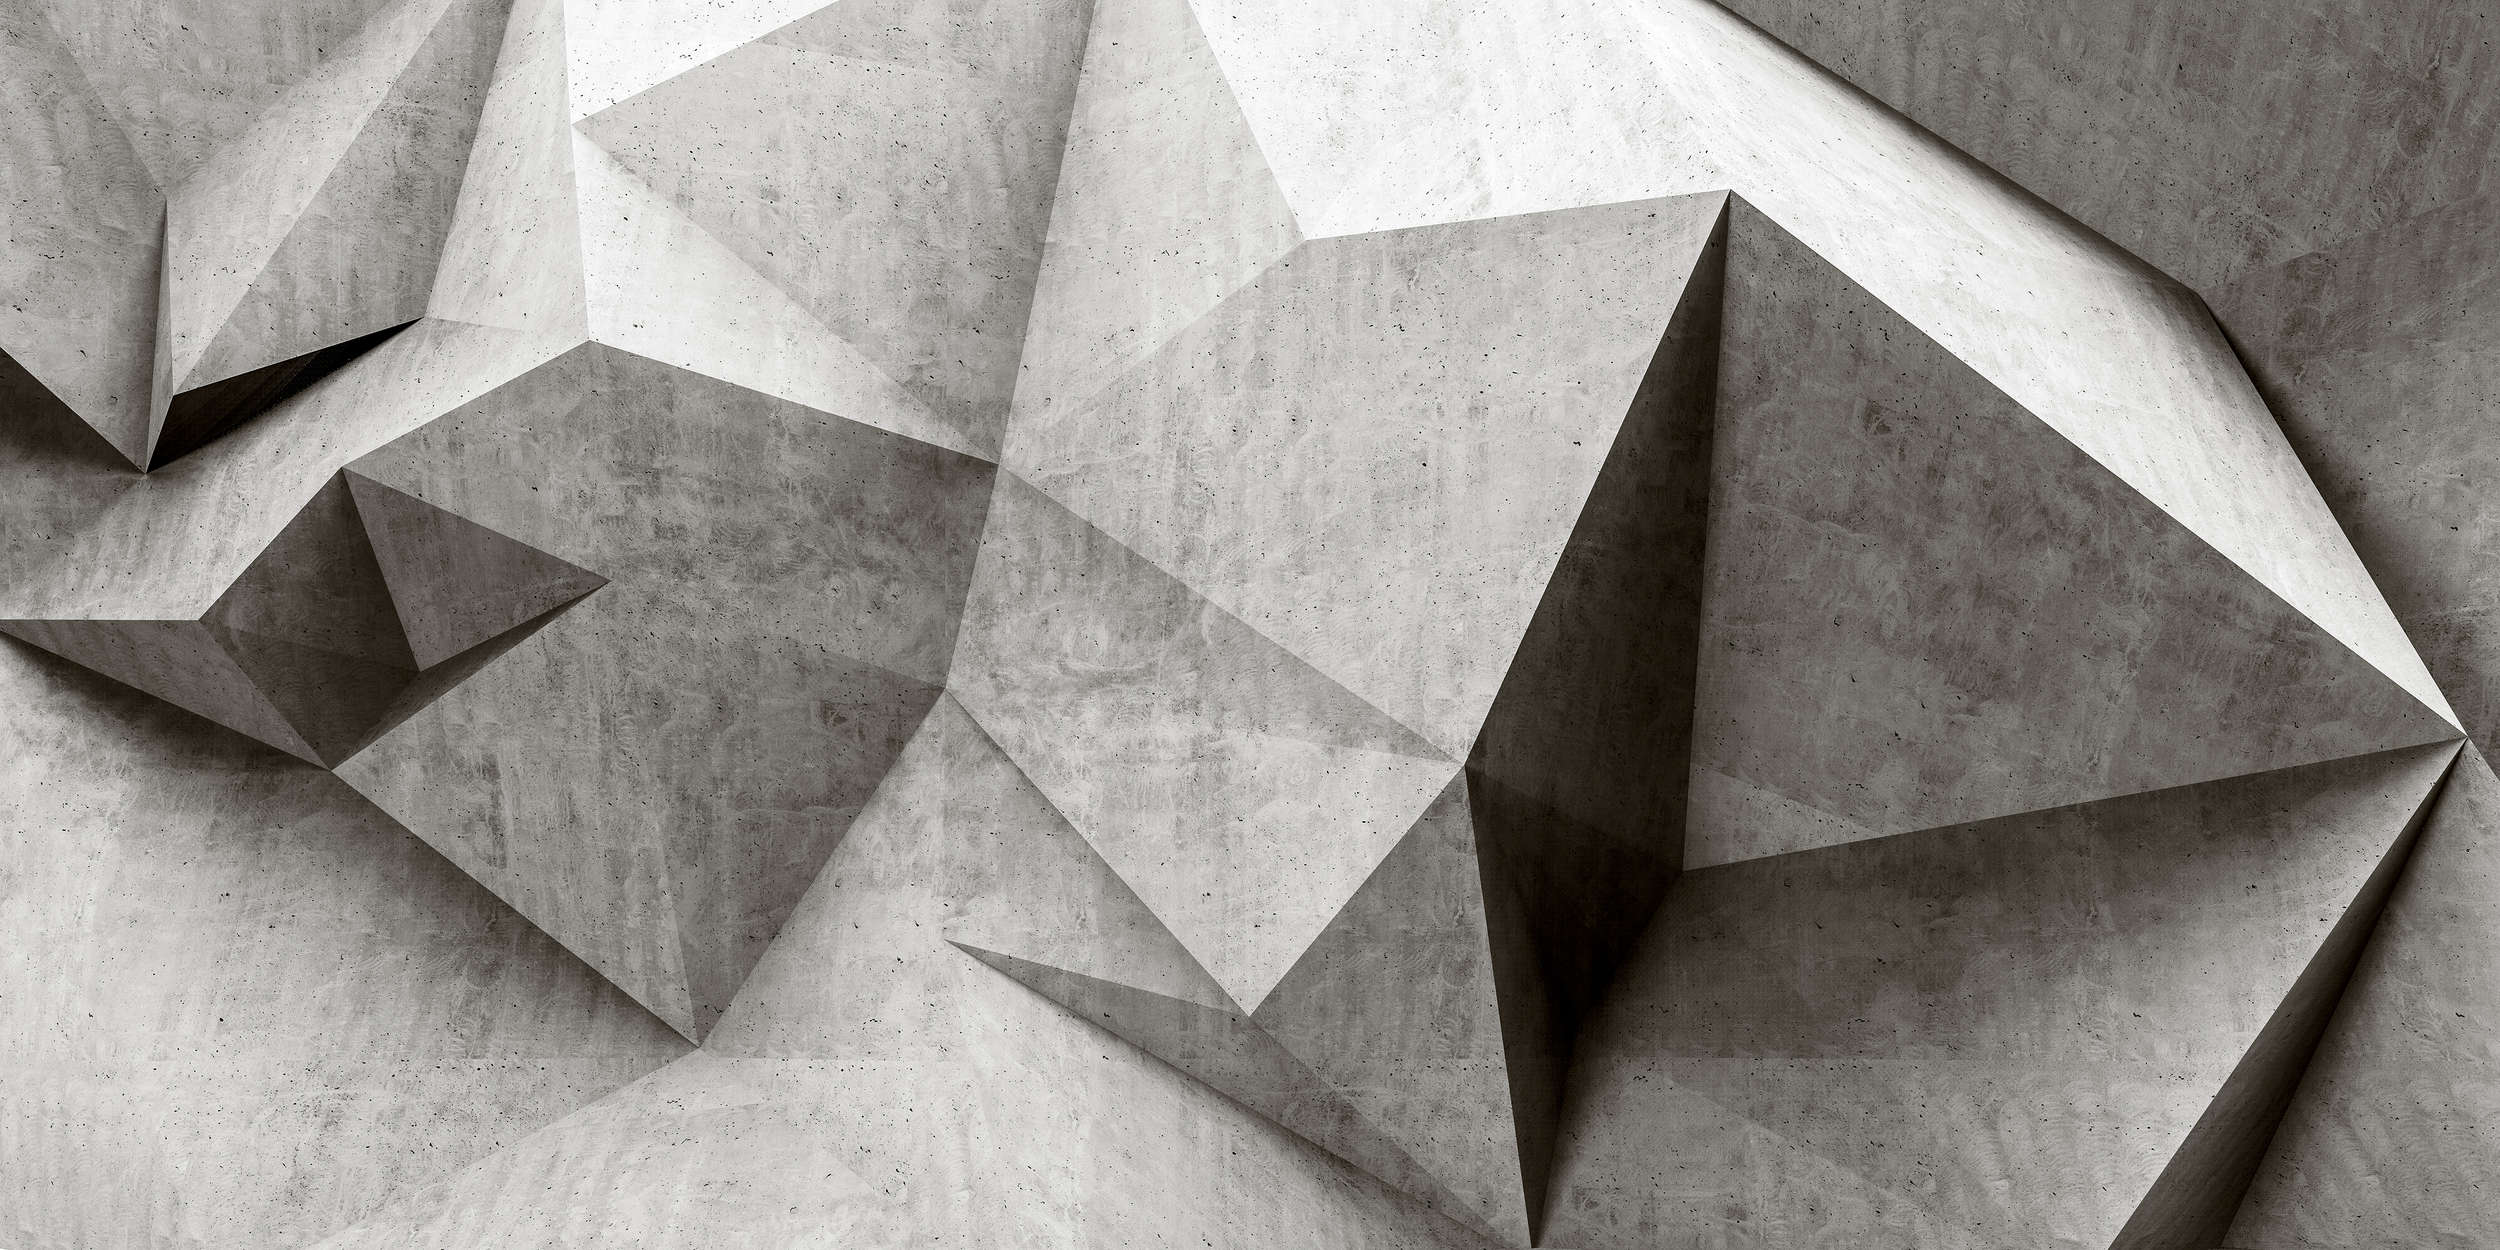             Boulder 1 - Cool 3D Concrete Polygons Wallpaper - Grey, Black | Matt Smooth Non-woven
        